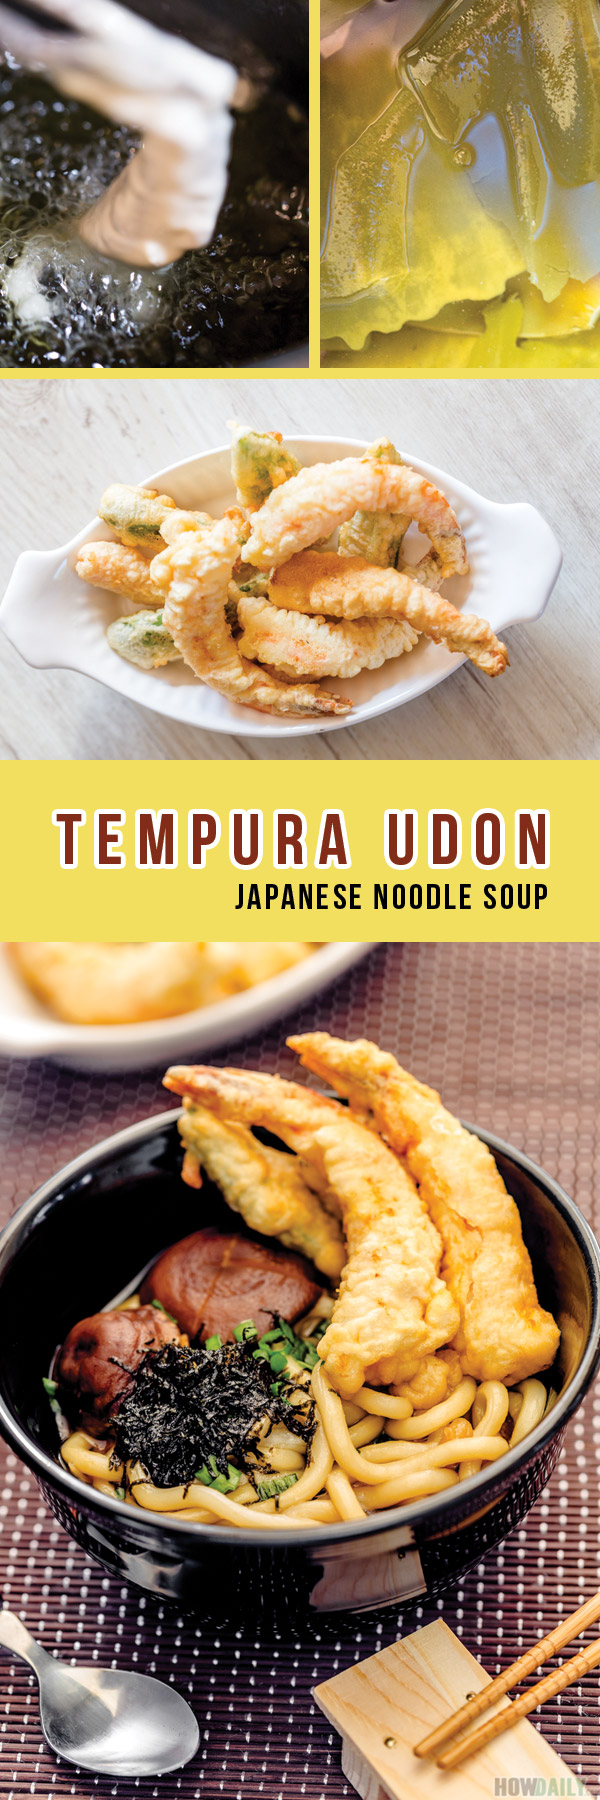 Japanese Tempura Udon Noodle Soup